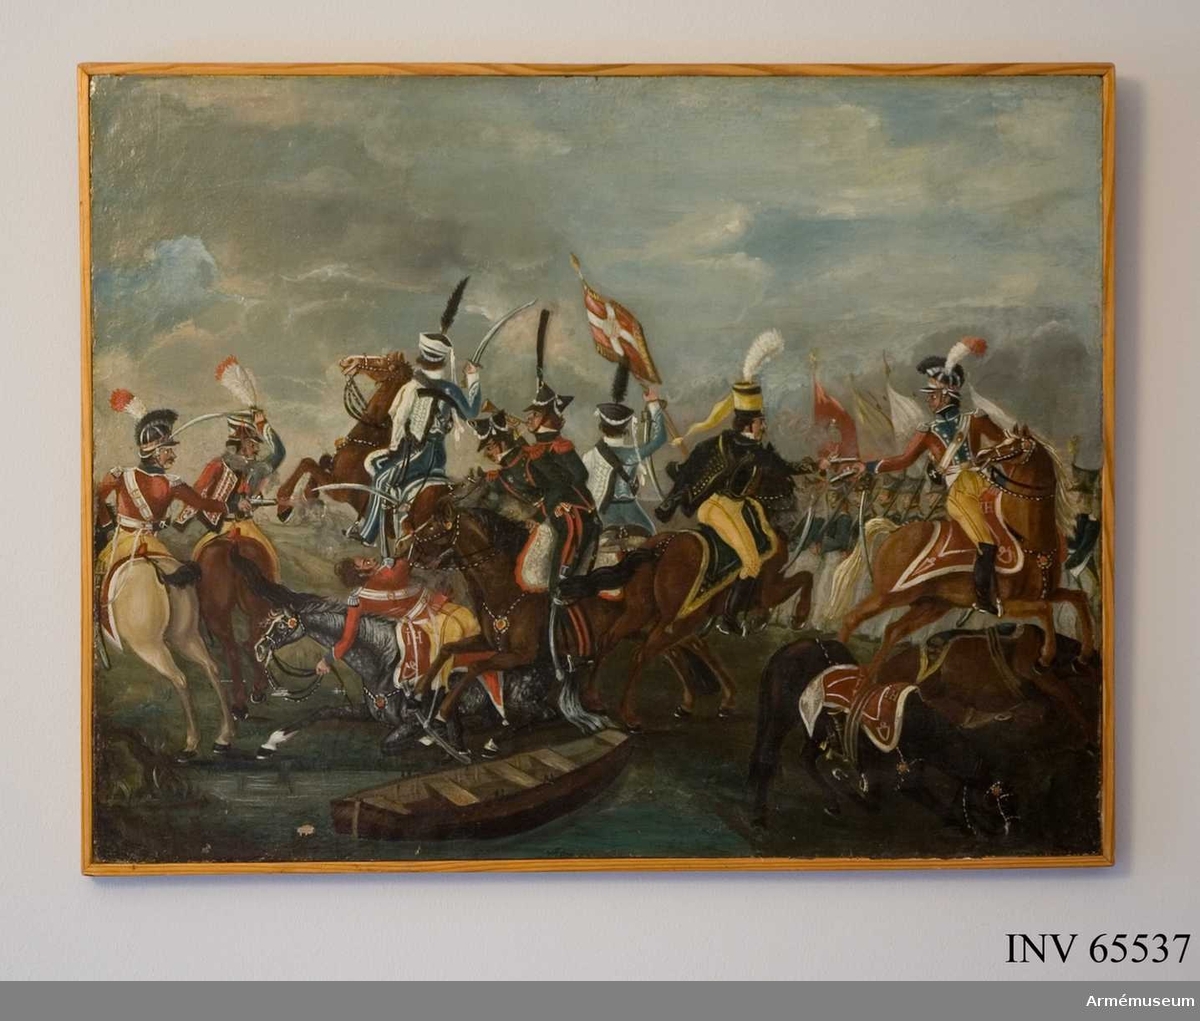 Grupp M I.
Målning föreställande "Dansk-svensk kavalleristrid, 1800-talets början". 3 st liknande målningar Svea livgarde 1968.